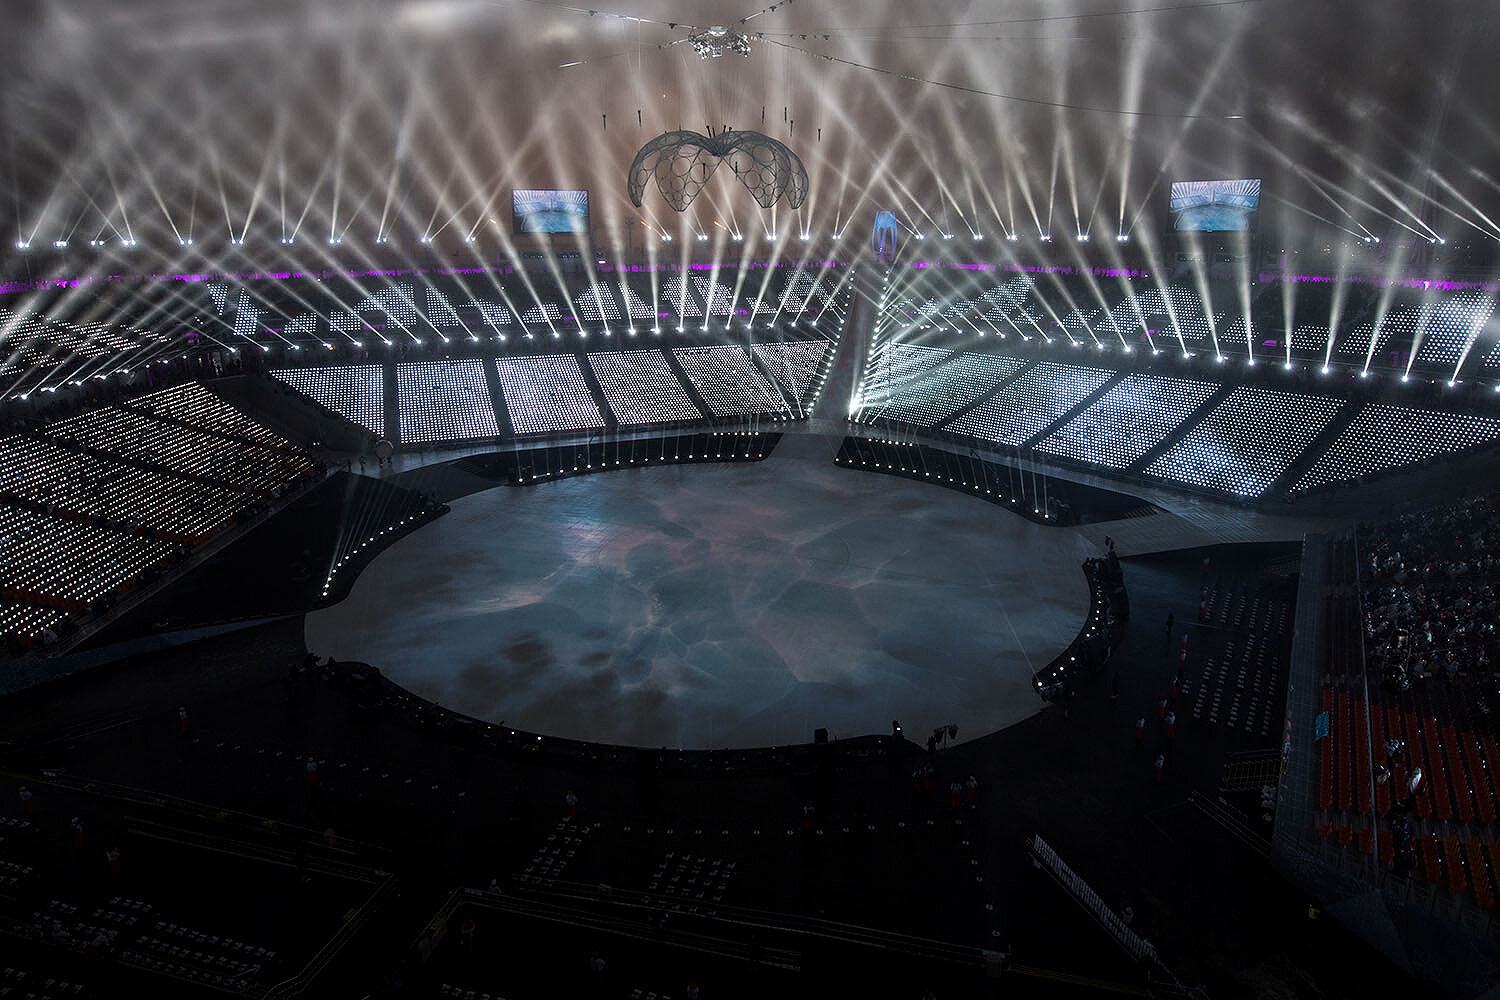 <p>Церемония открытия Паралимпиады прошла на Олимпийском стадионе Пхенчхана. Он вмещает 35 тысяч человек и занимает площадь 240 тысяч квадратных метров (вместе с прилегающей территорией).</p>

<p>Стадион имеет форму пятиугольника, каждая угловая трибуна которого символизирует цели Игр с разных сторон: мир, культуру, экологию, экономию и развитие информационных технологий.</p>